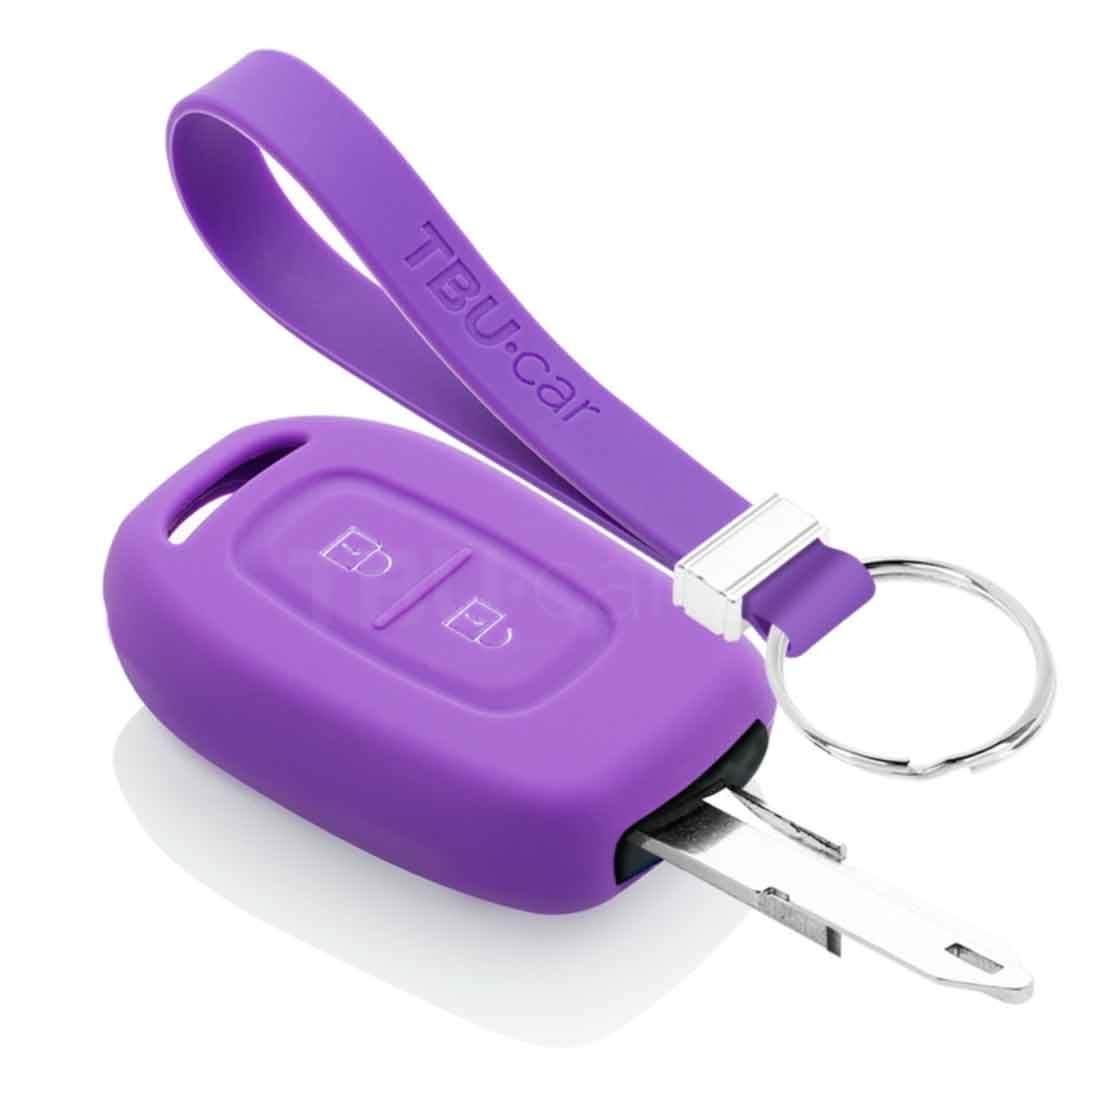 TBU car Autoschlüssel Hülle kompatibel mit Dacia 2 Tasten - Schutzhülle aus Silikon - Auto Schlüsselhülle Cover in Violett von TBU car